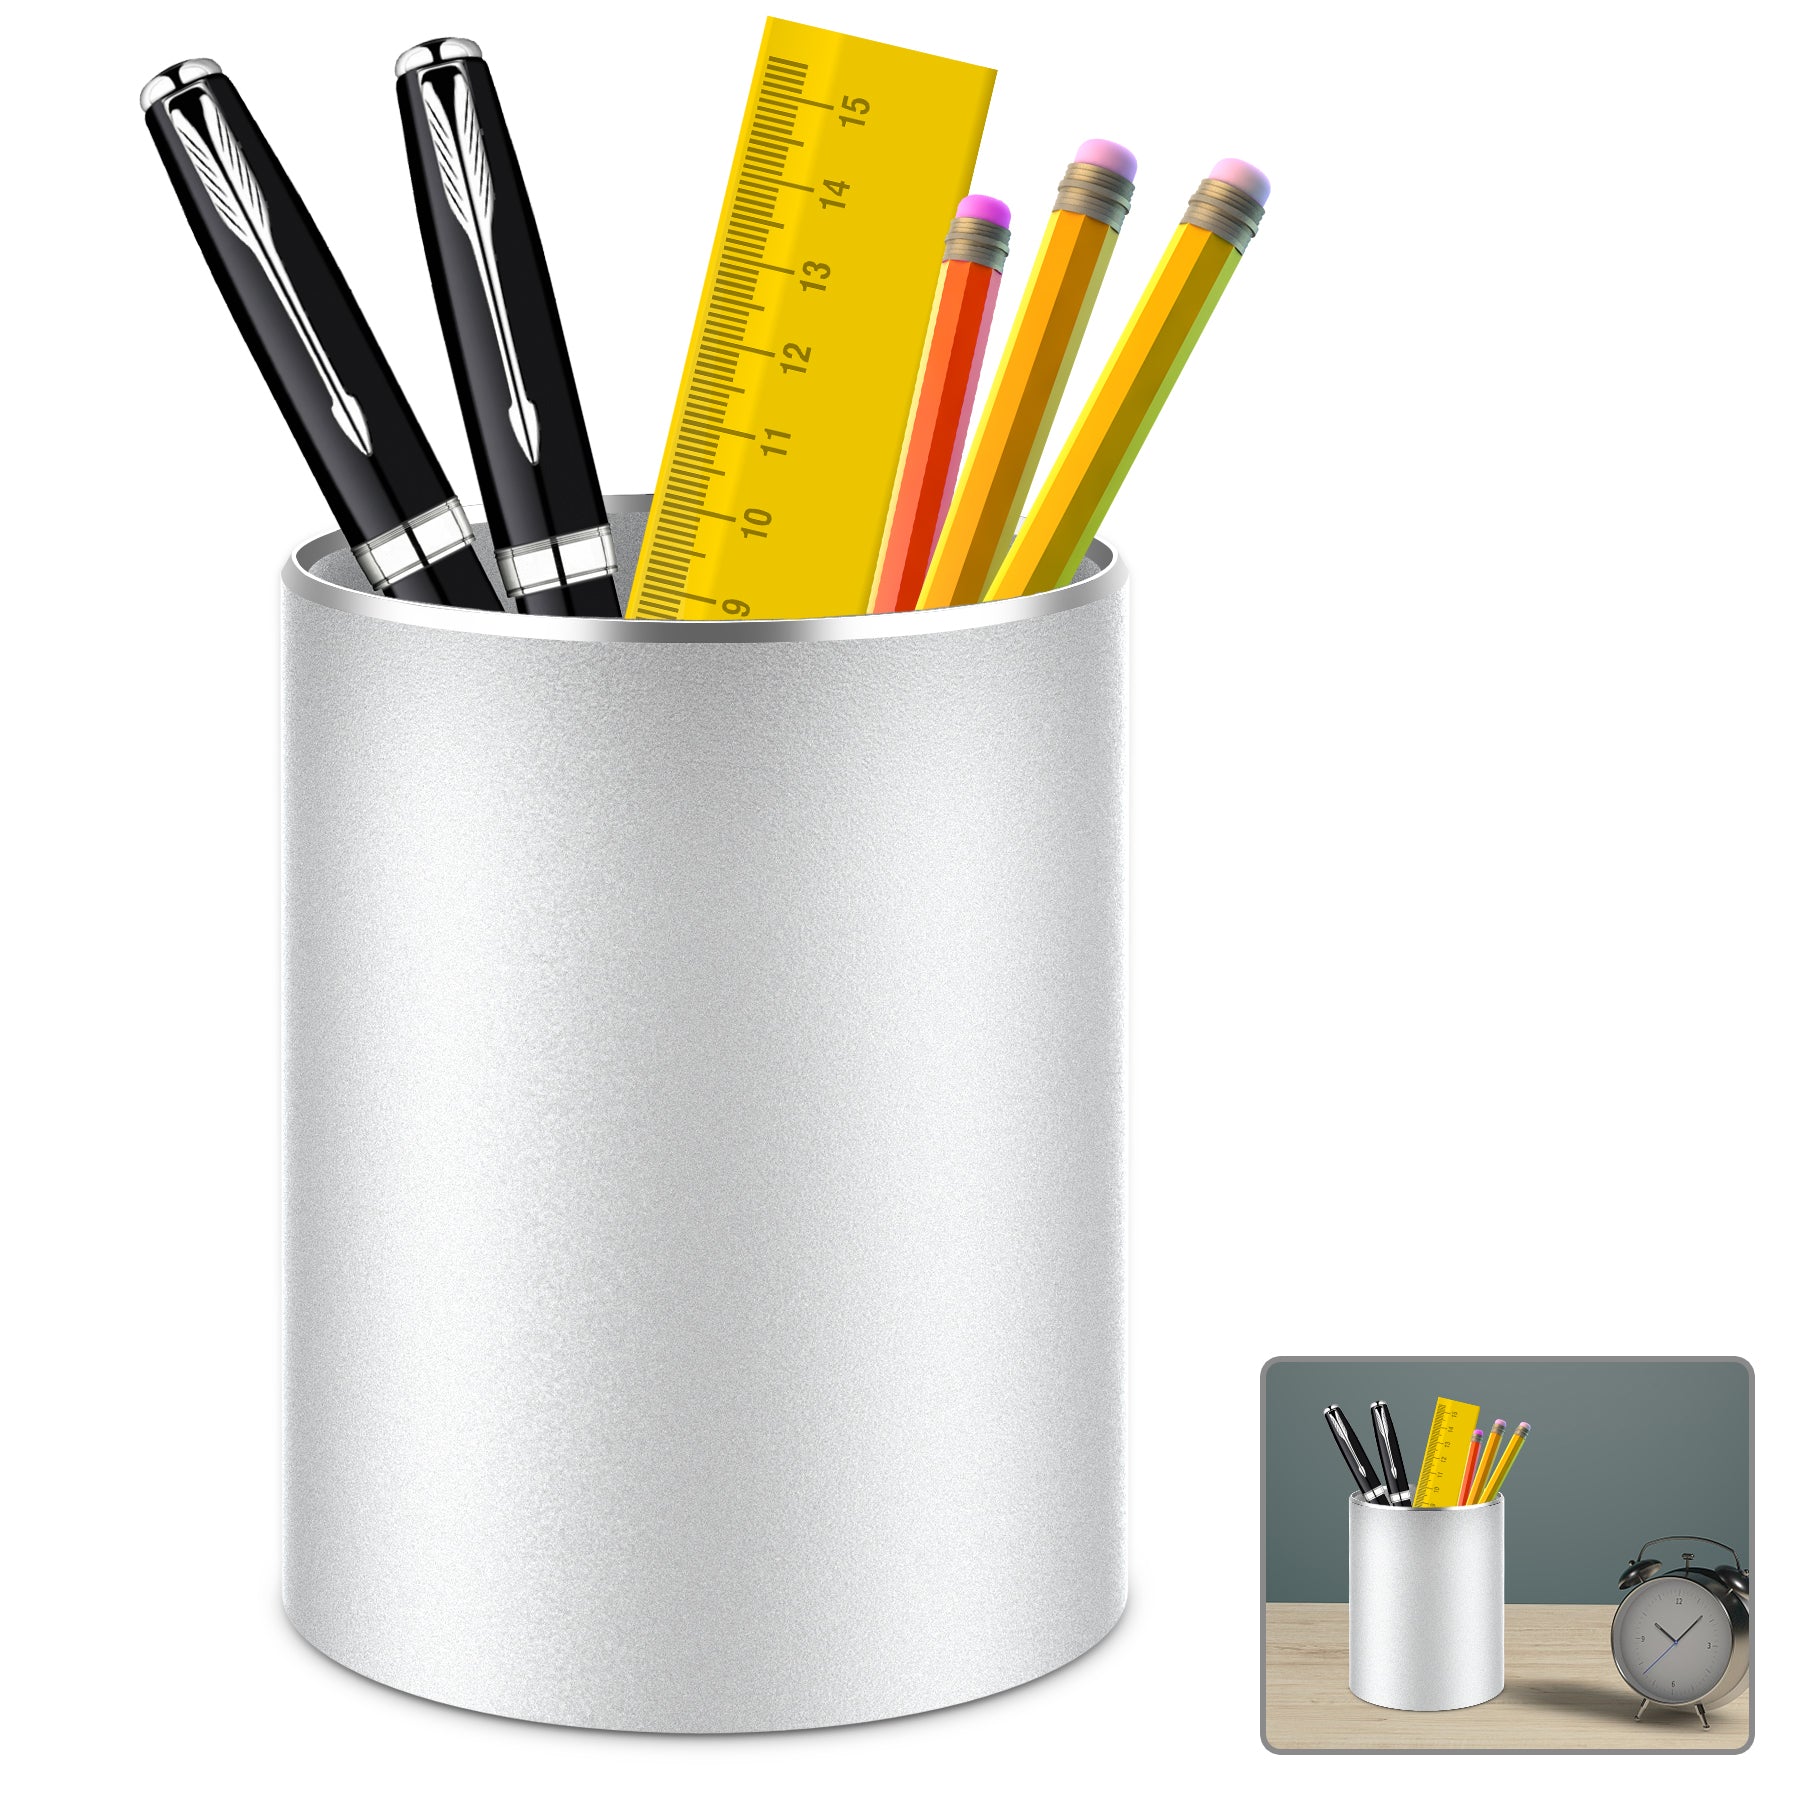 Giecy Pen Holder Pencil Holder for Desk Metal Desk Pen Cup Holder Make